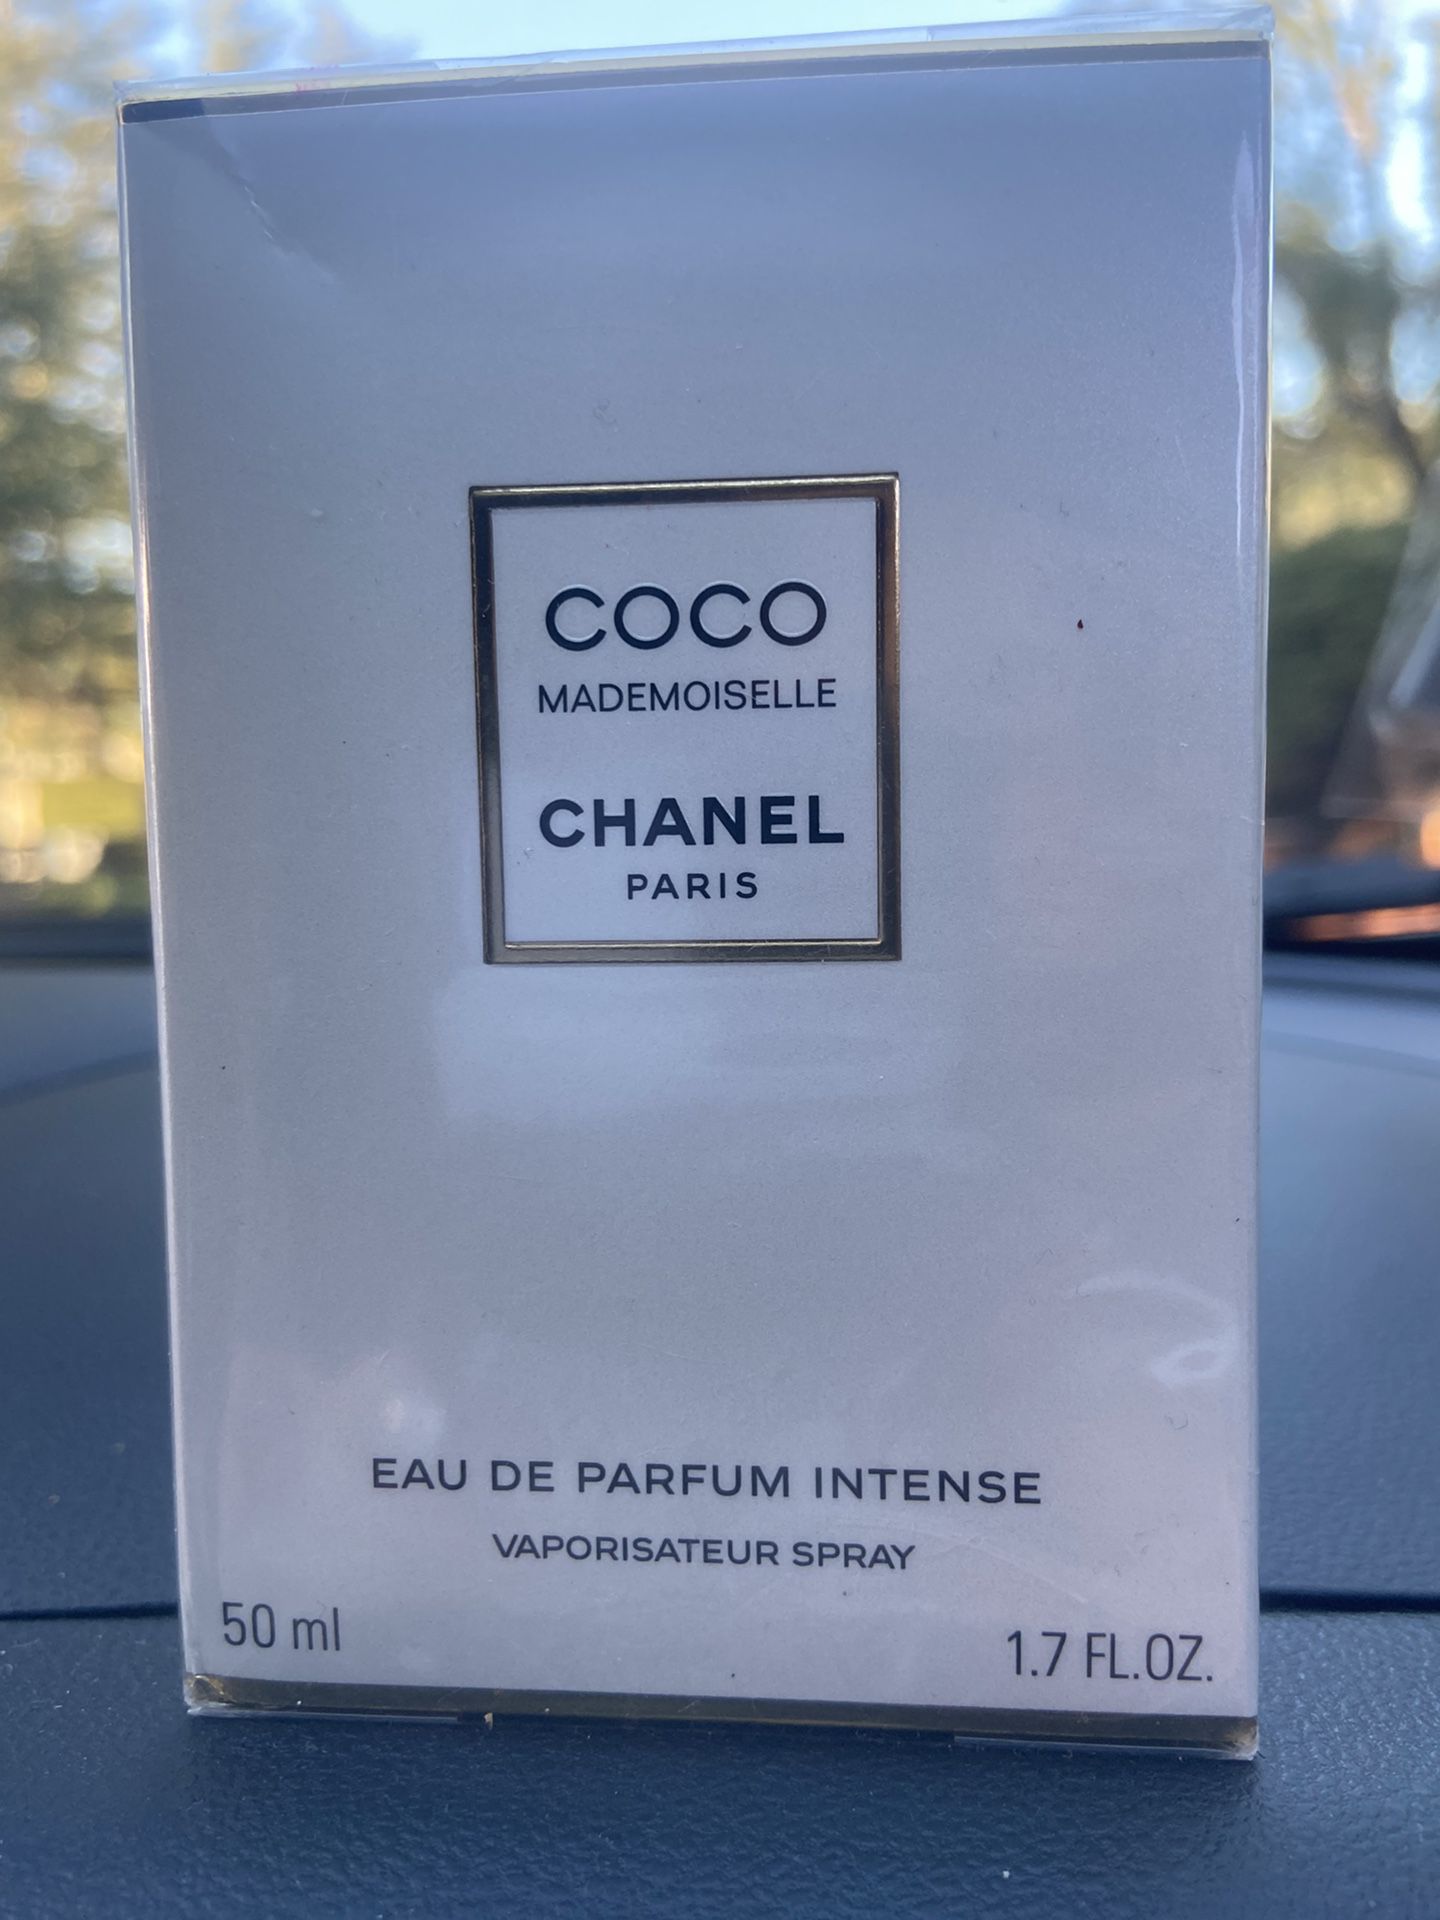 COCO Mademoiselle CHANEL Paris  EAU DE PARFUM  INTENSE Vaporisateur Spray